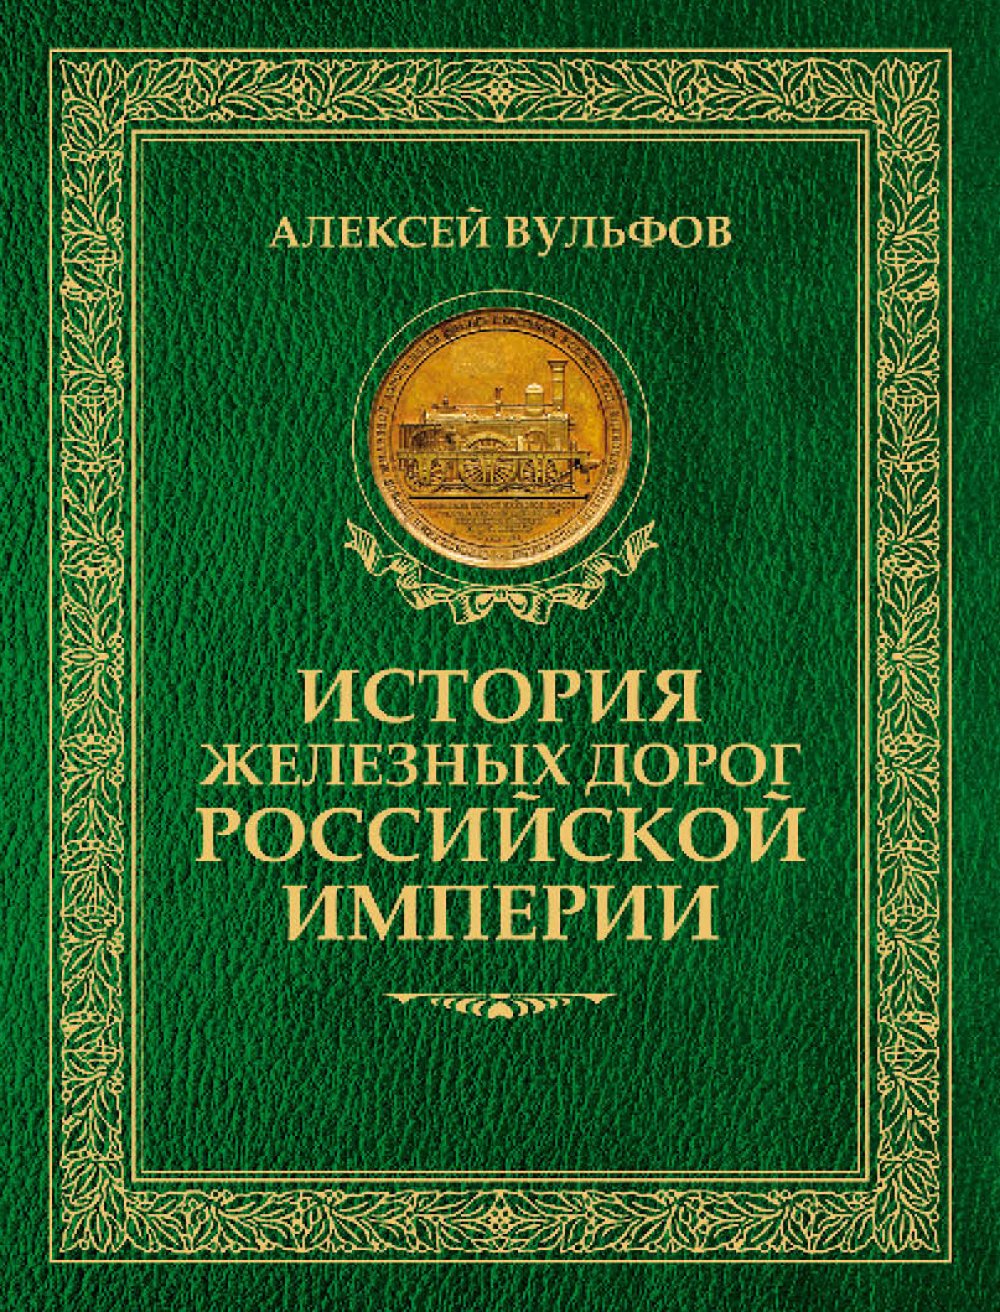 Вульфов А. История железных дорог Российской империи